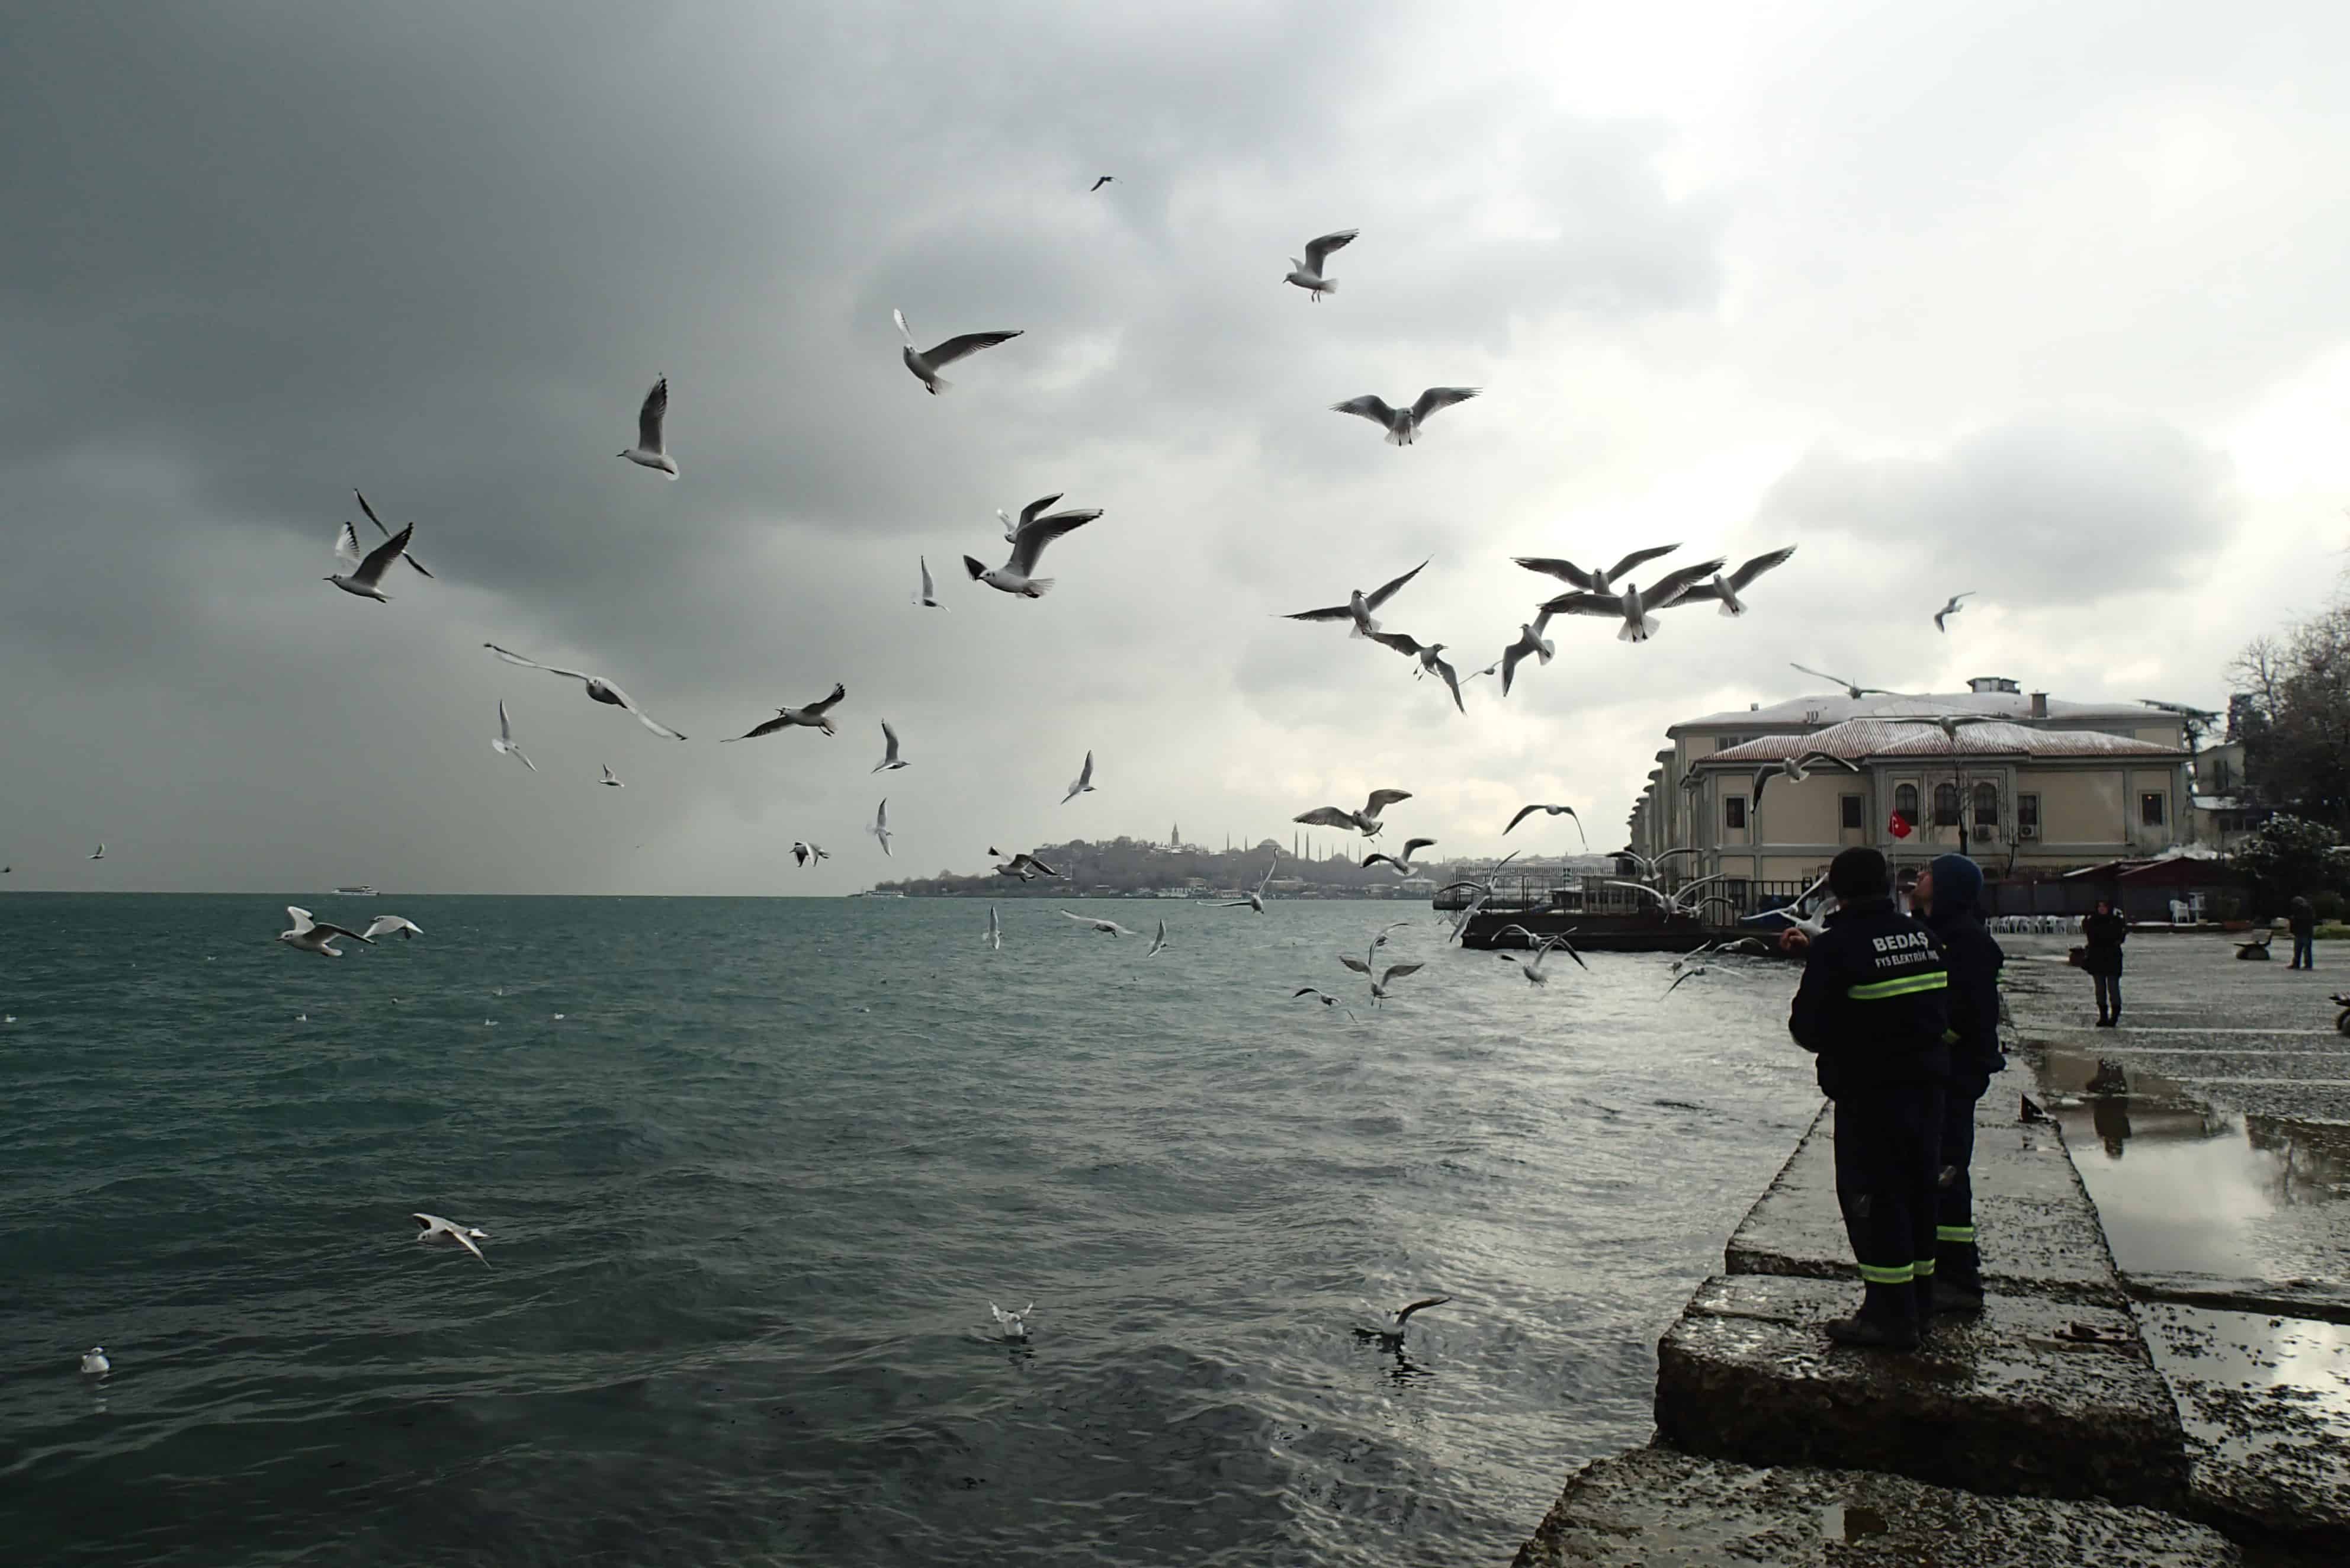 Twee havenmeesters voeren brood aan de meeuwen boven de Bosporus